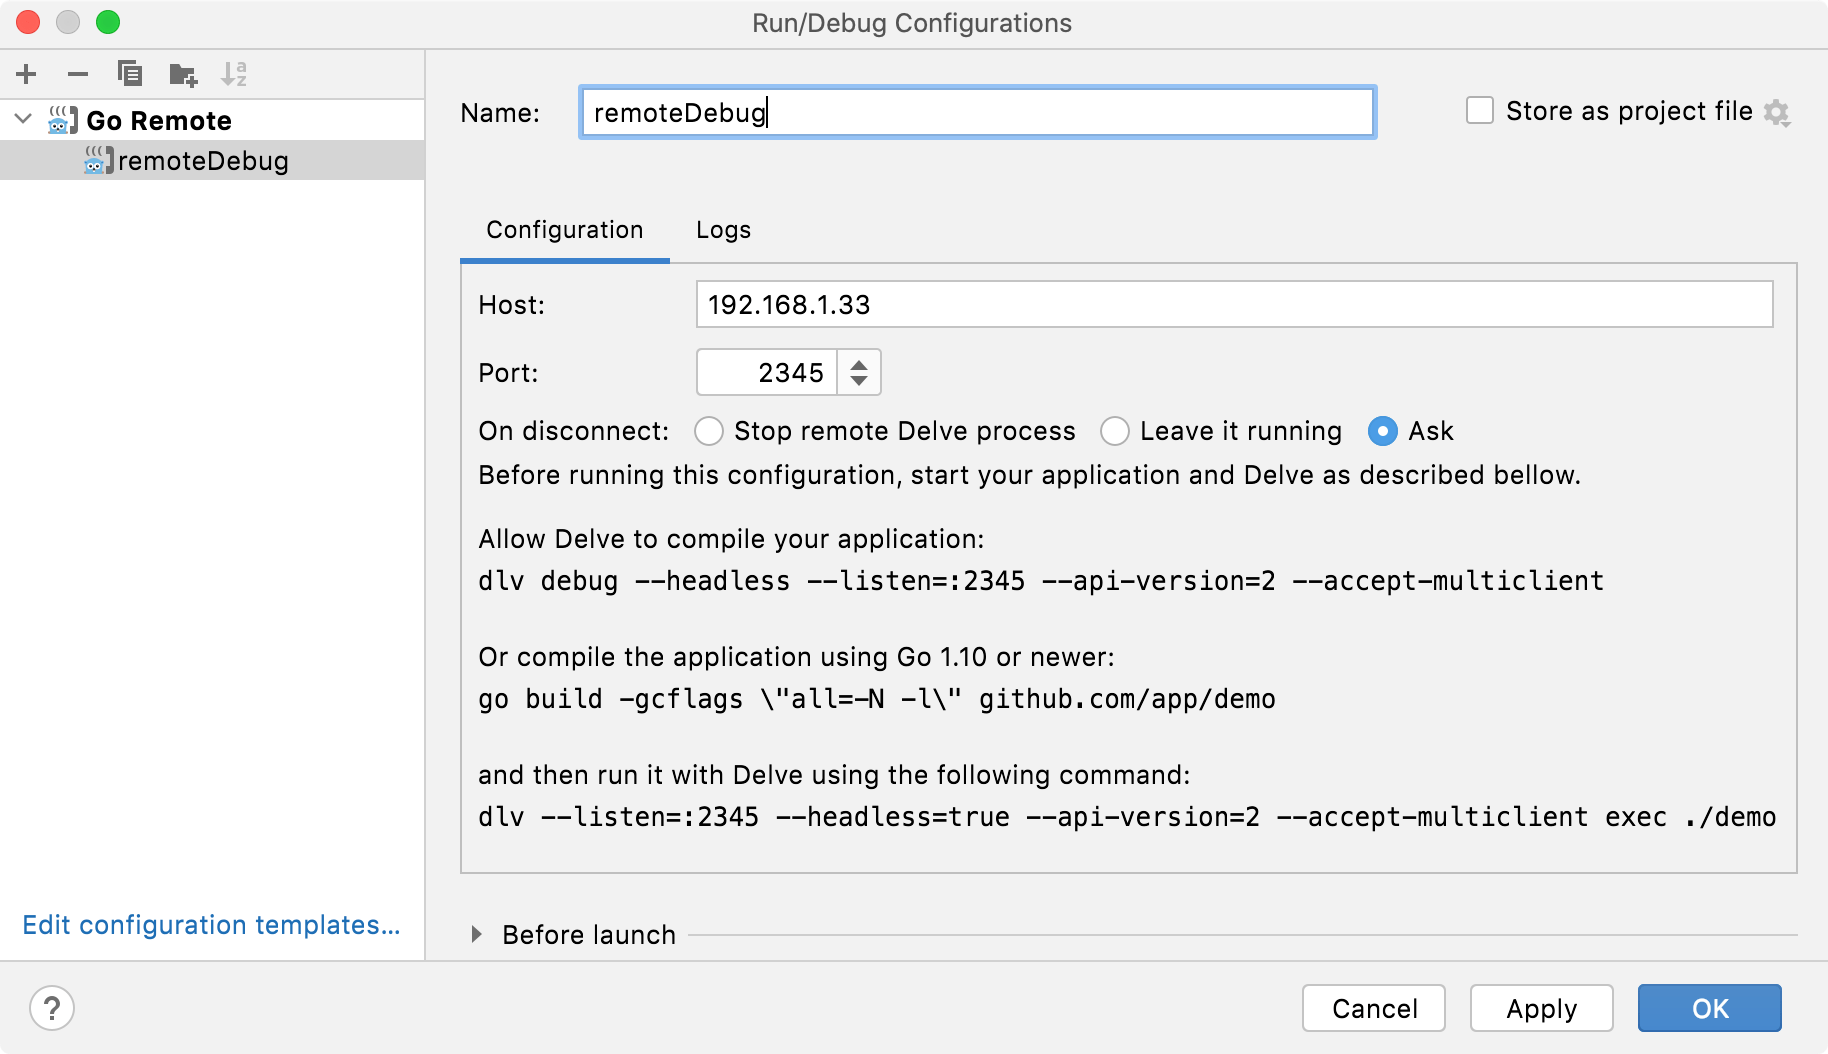 Run/Debug Configuration for Go Remote